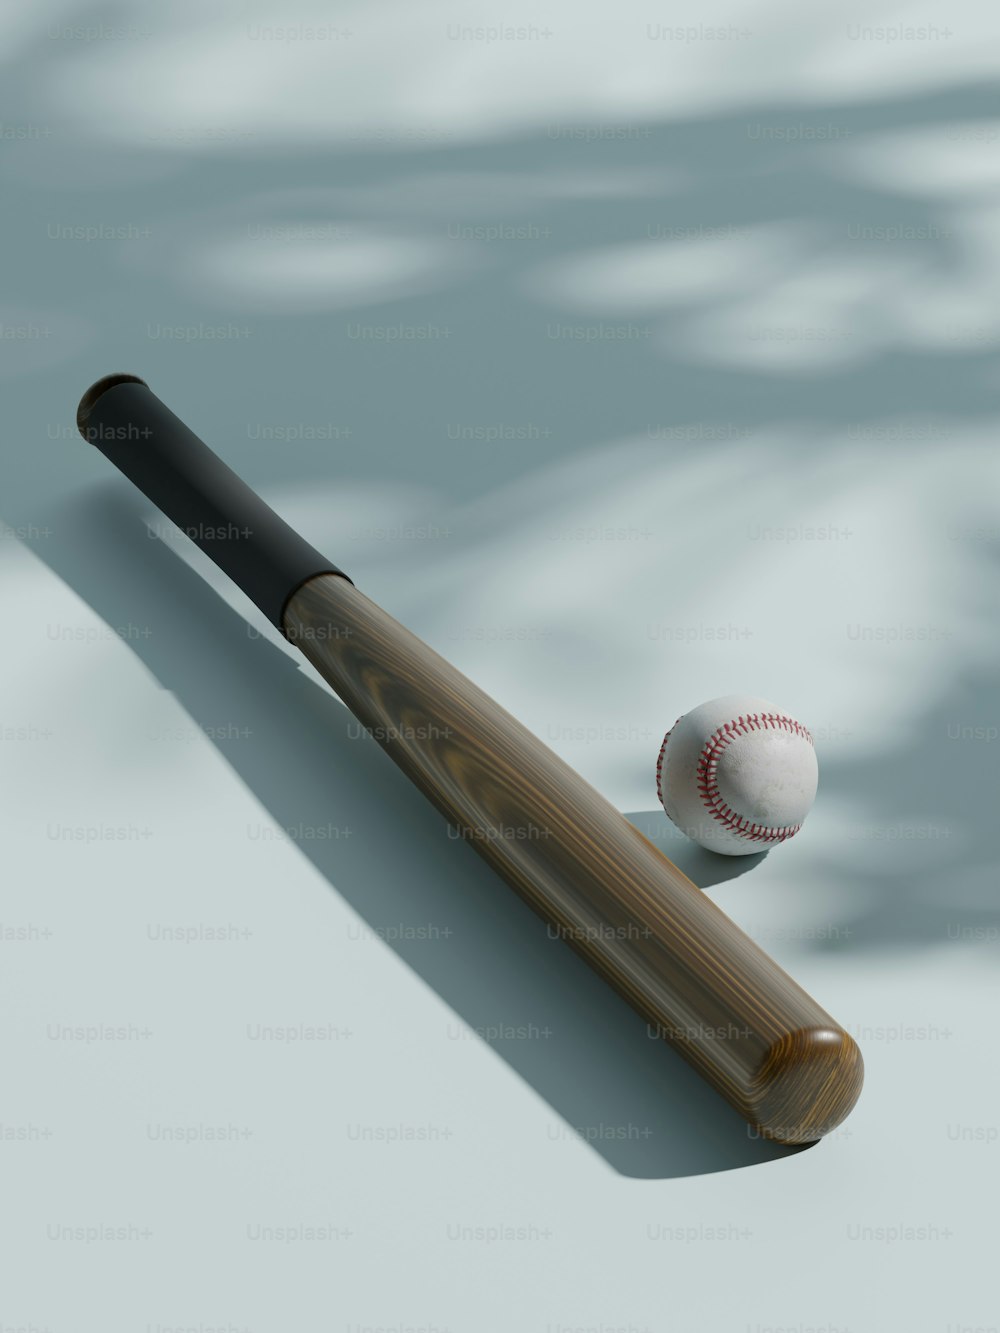 테이블 위의 야구 방망이와 야구공